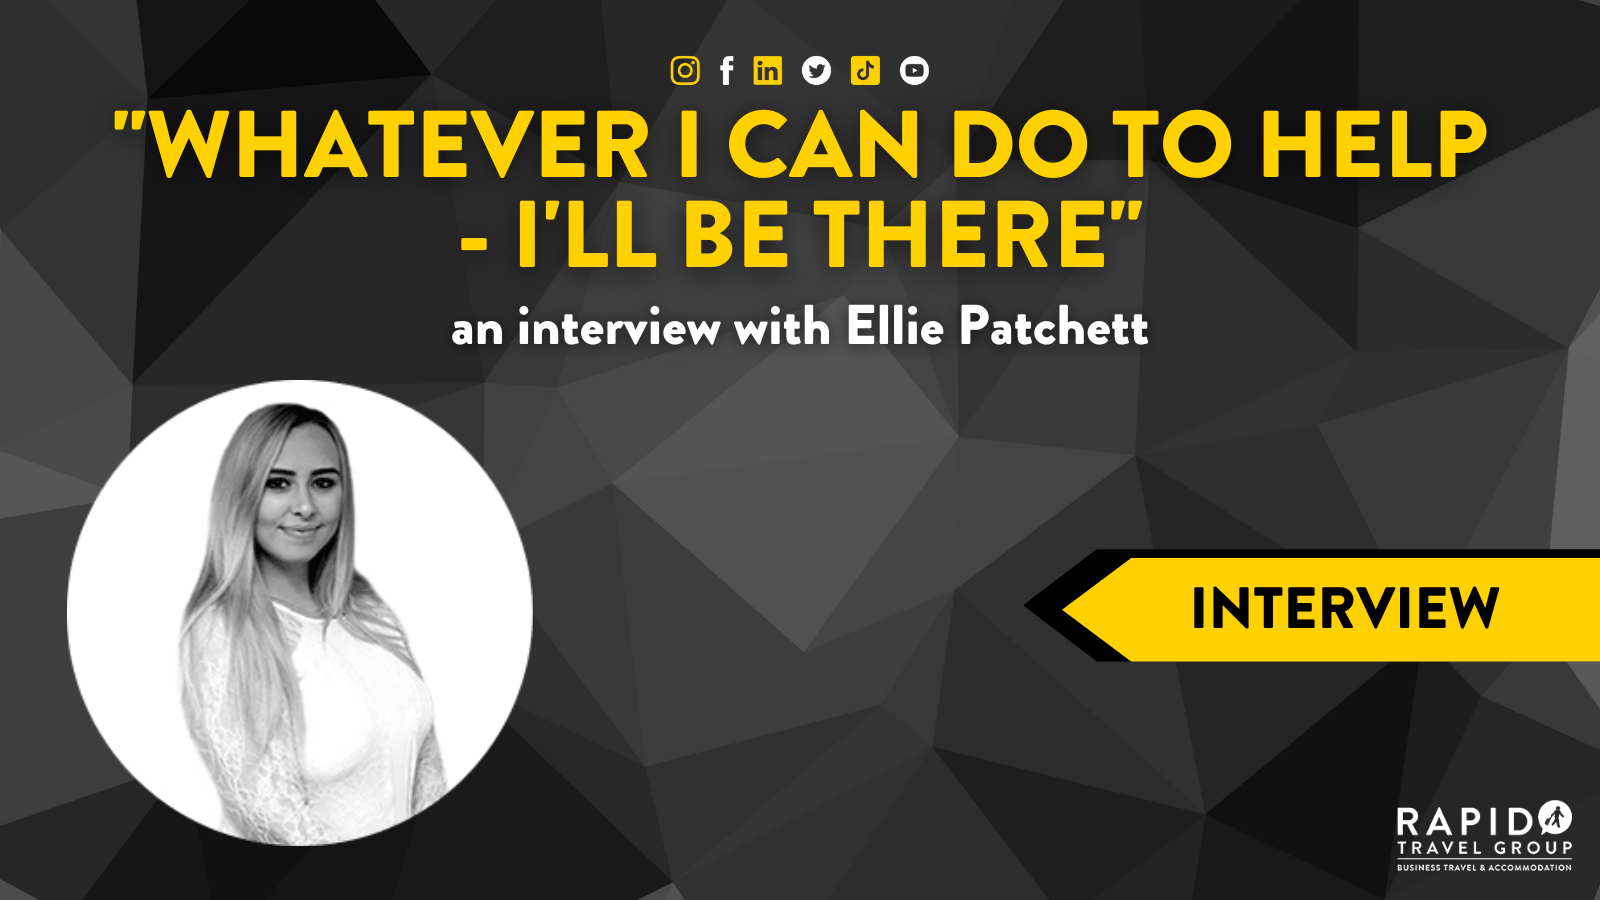 Interview with Ellie Patchett